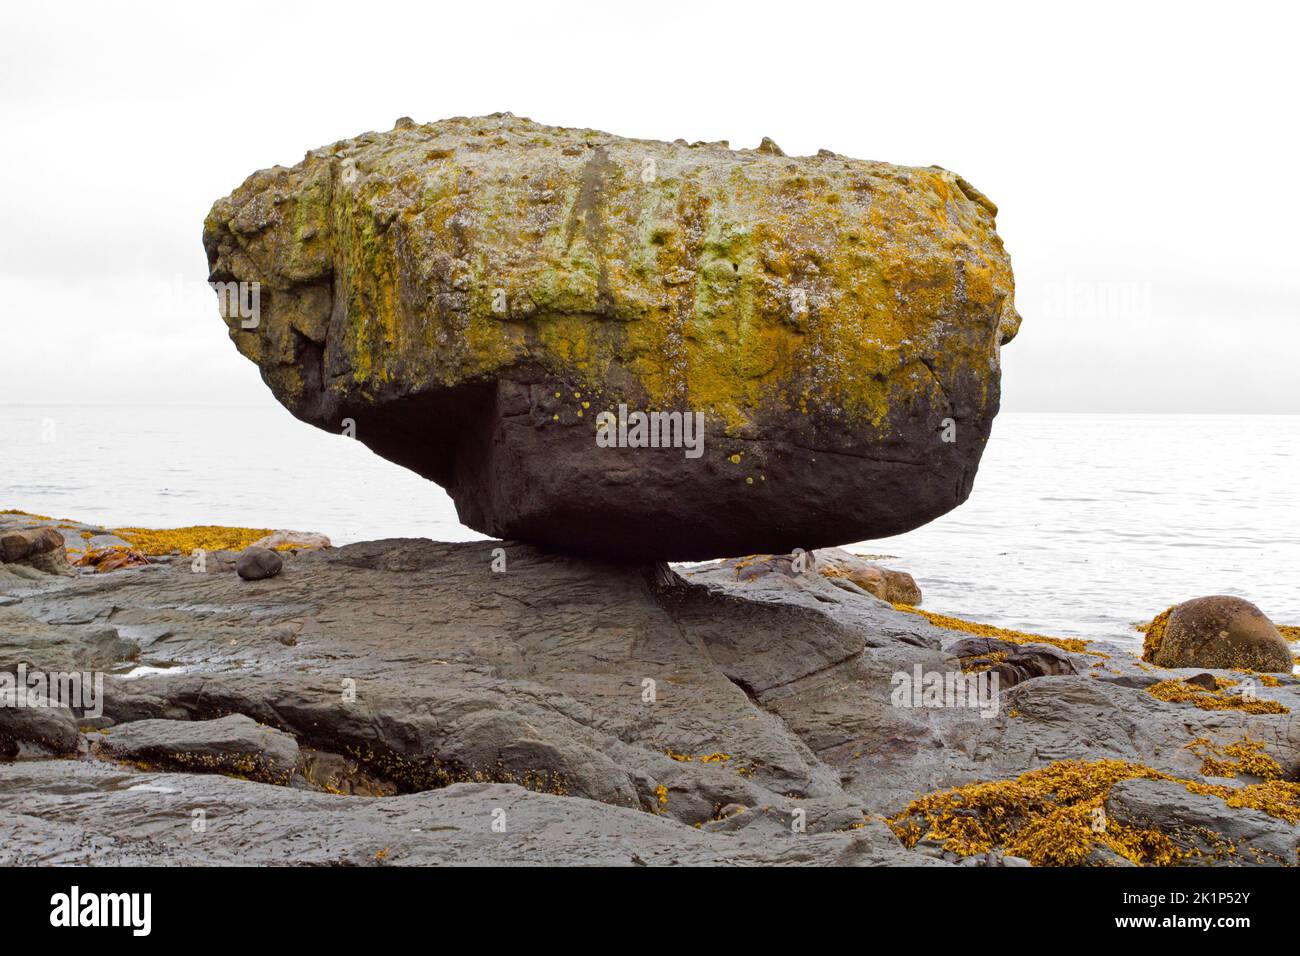 Gros plan de Balance Rock, une attraction touristique près de Skidegate, île Graham, Haida Gwaii (anciennement îles de la Reine-Charlotte) Colombie-Britannique, Canada. Banque D'Images